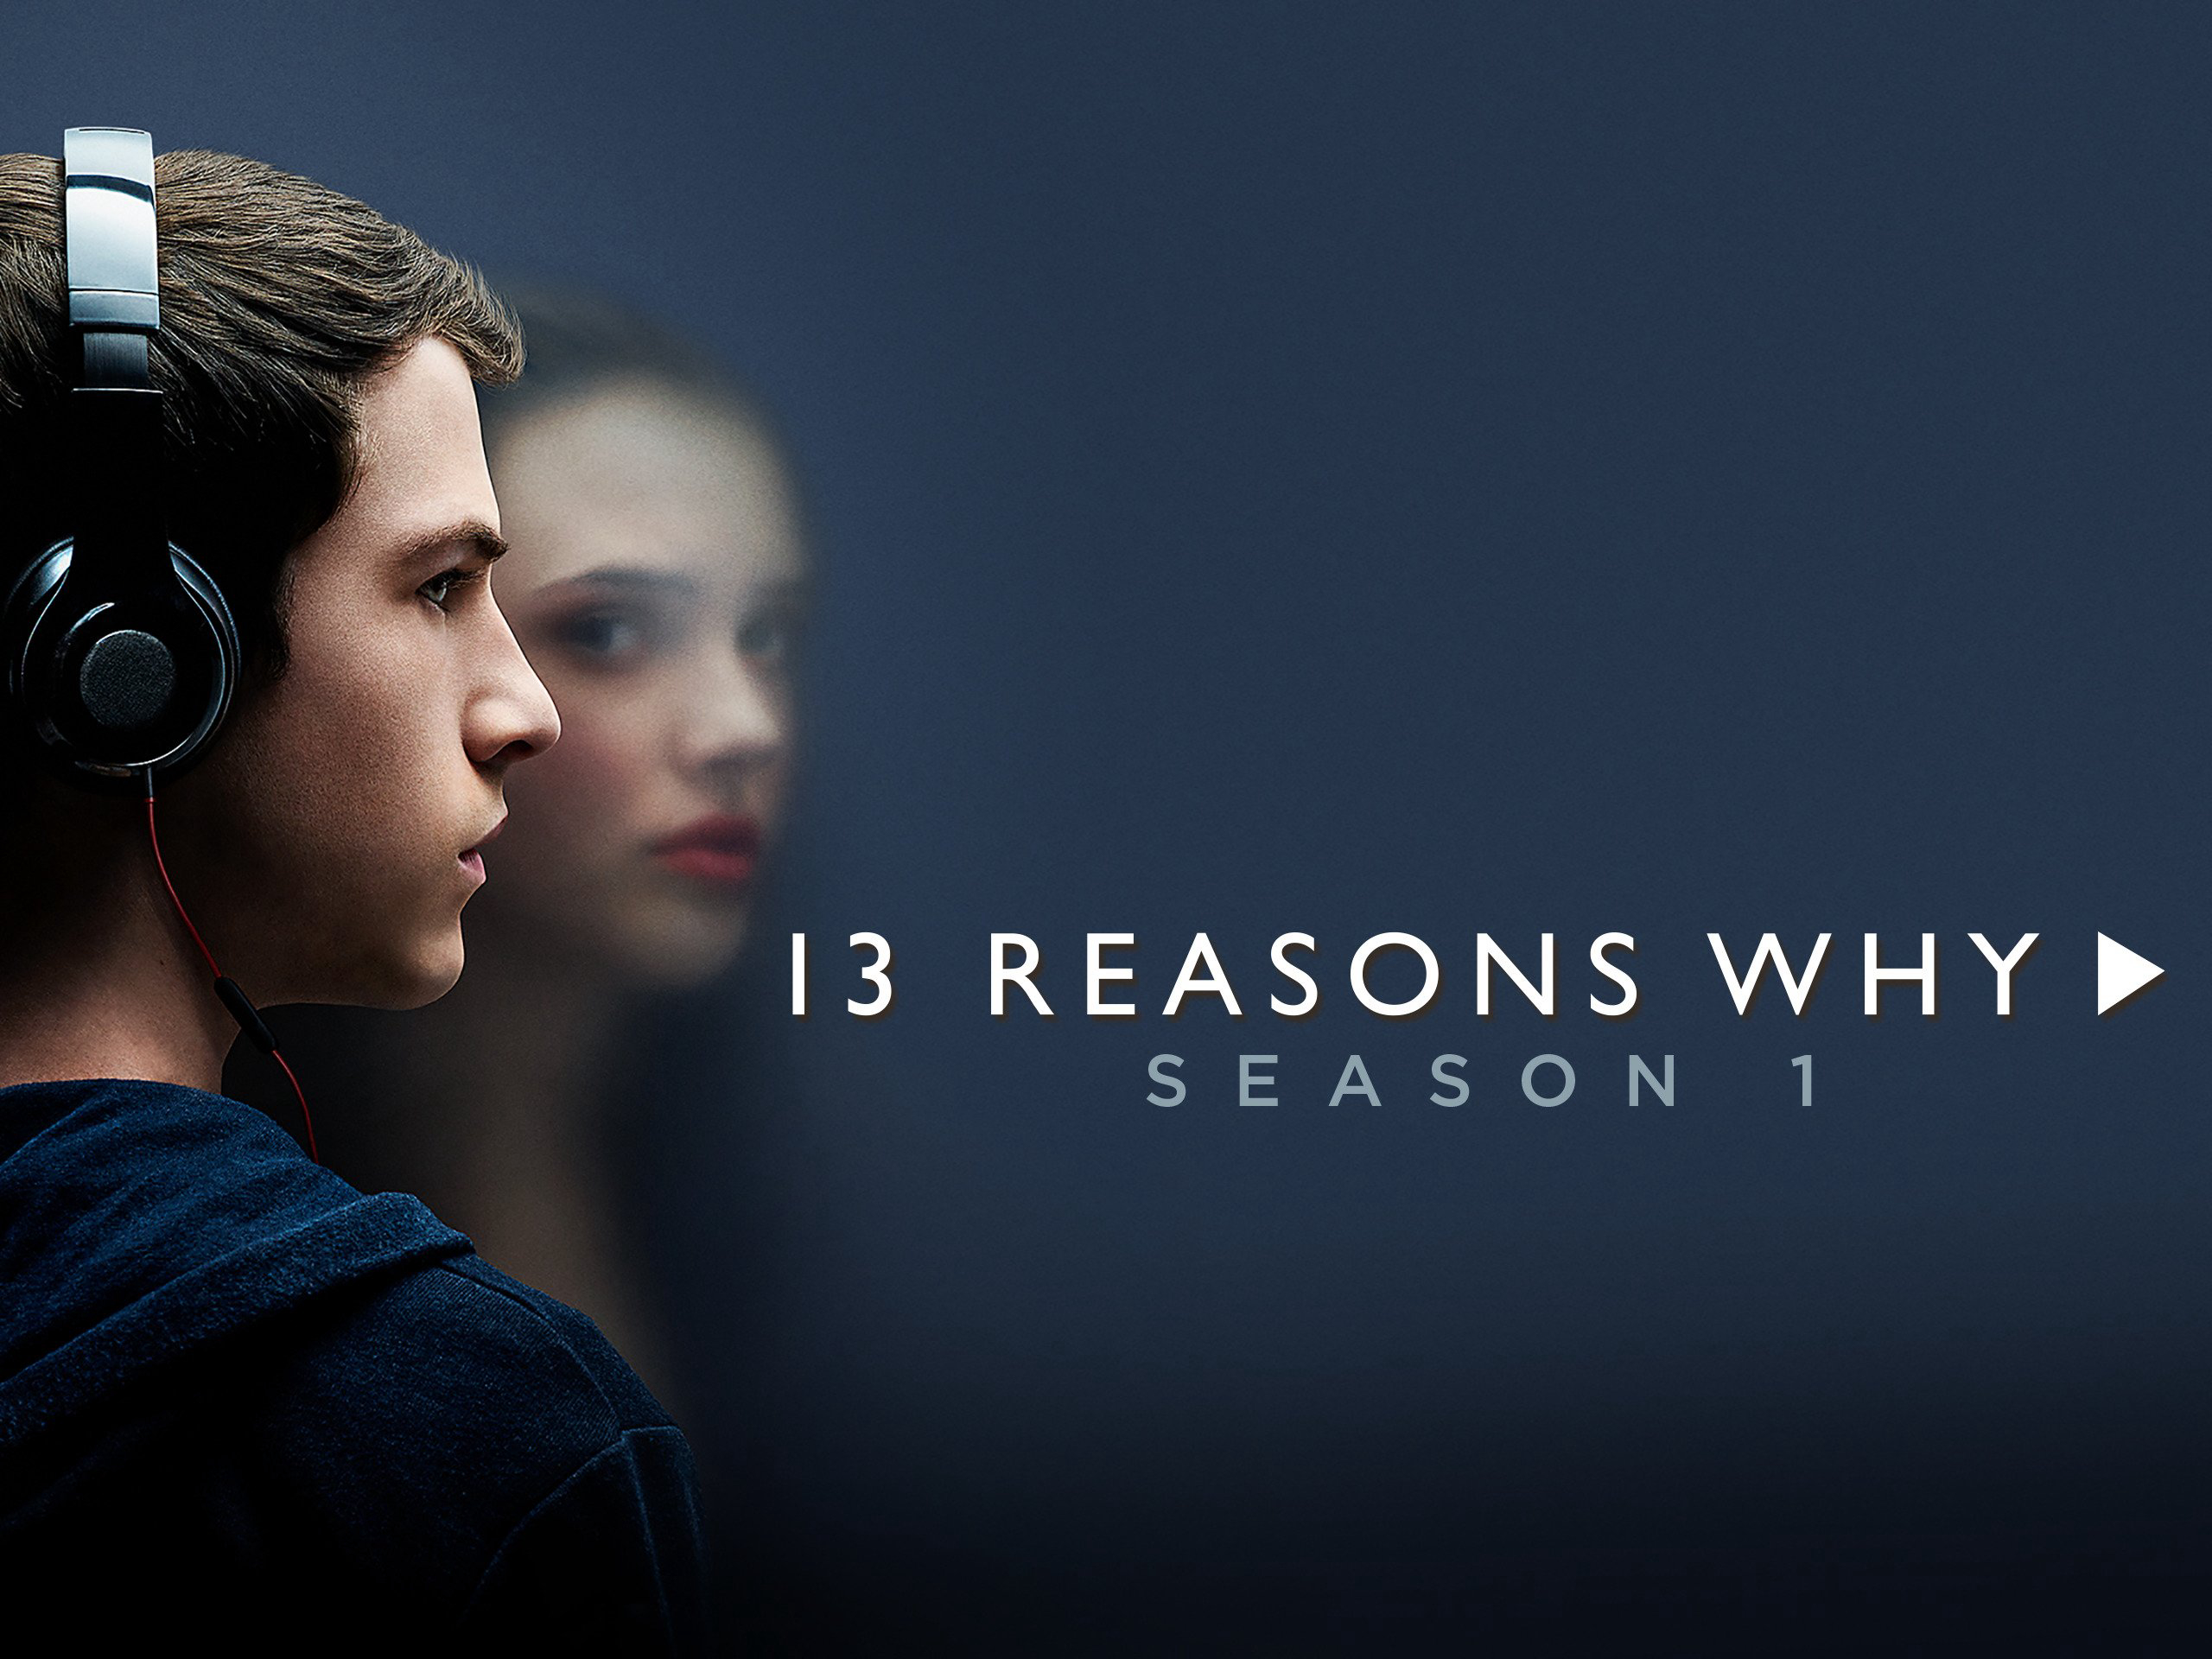 13 lý do tại sao (Phần 1) - 13 Reasons Why (Season 1) (2017)